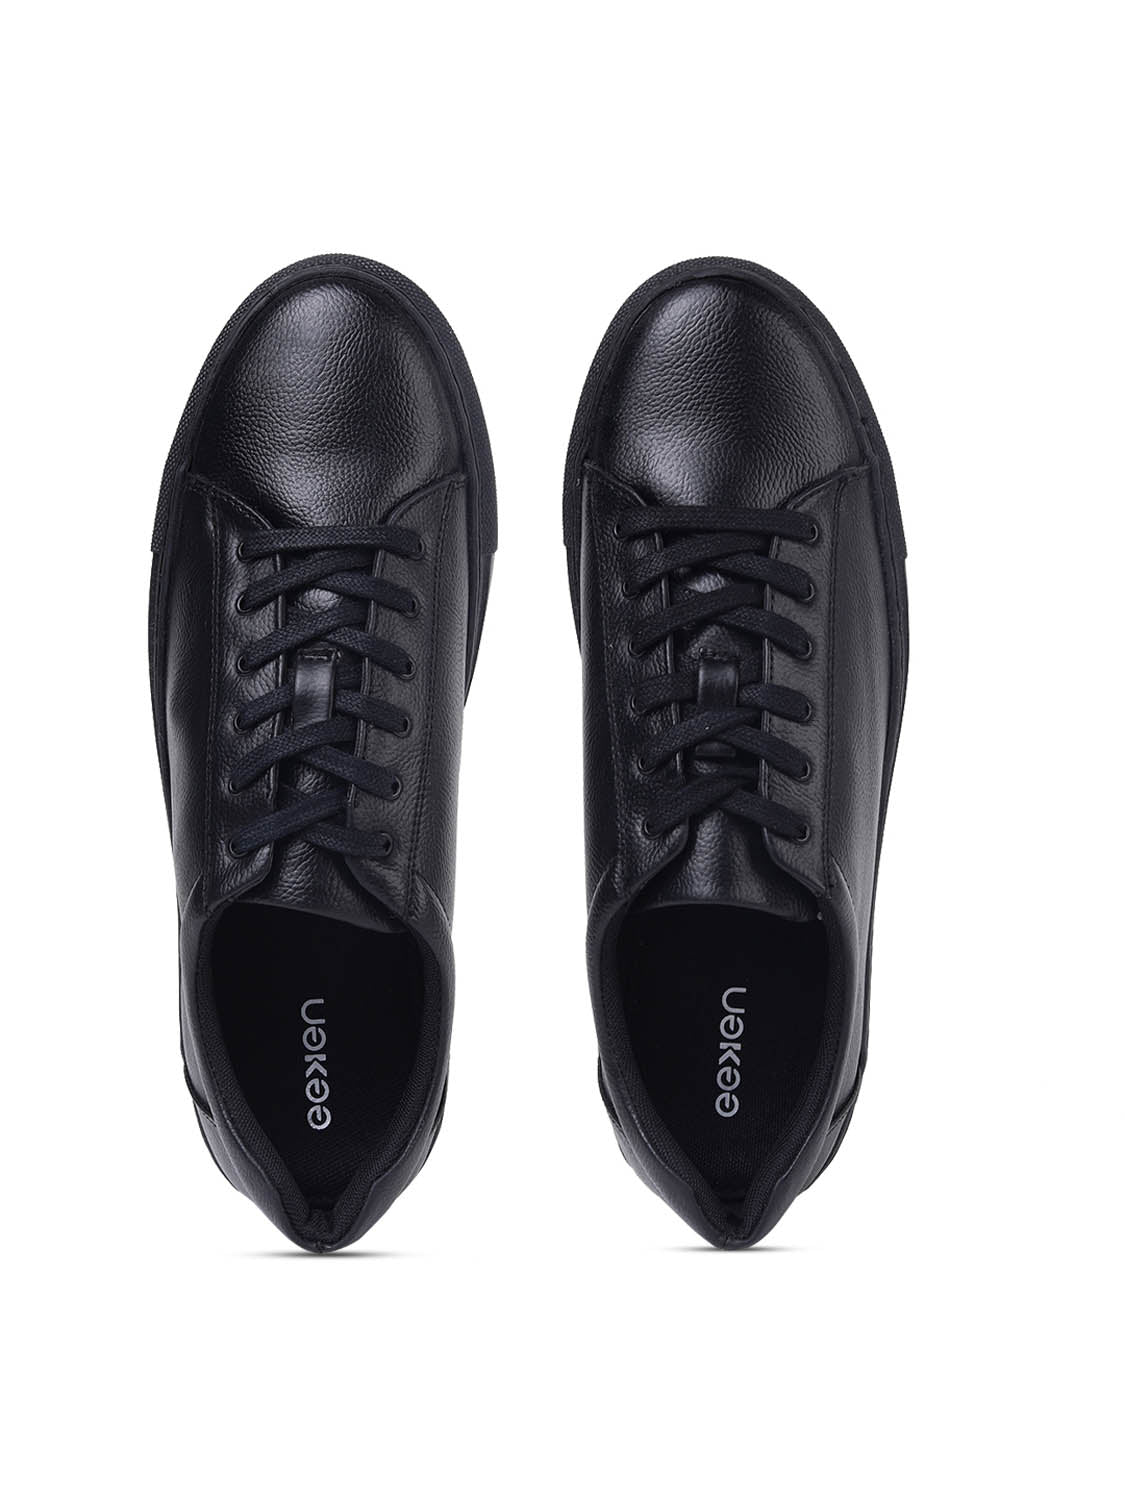 Eeken Sneakers For Men (Black)